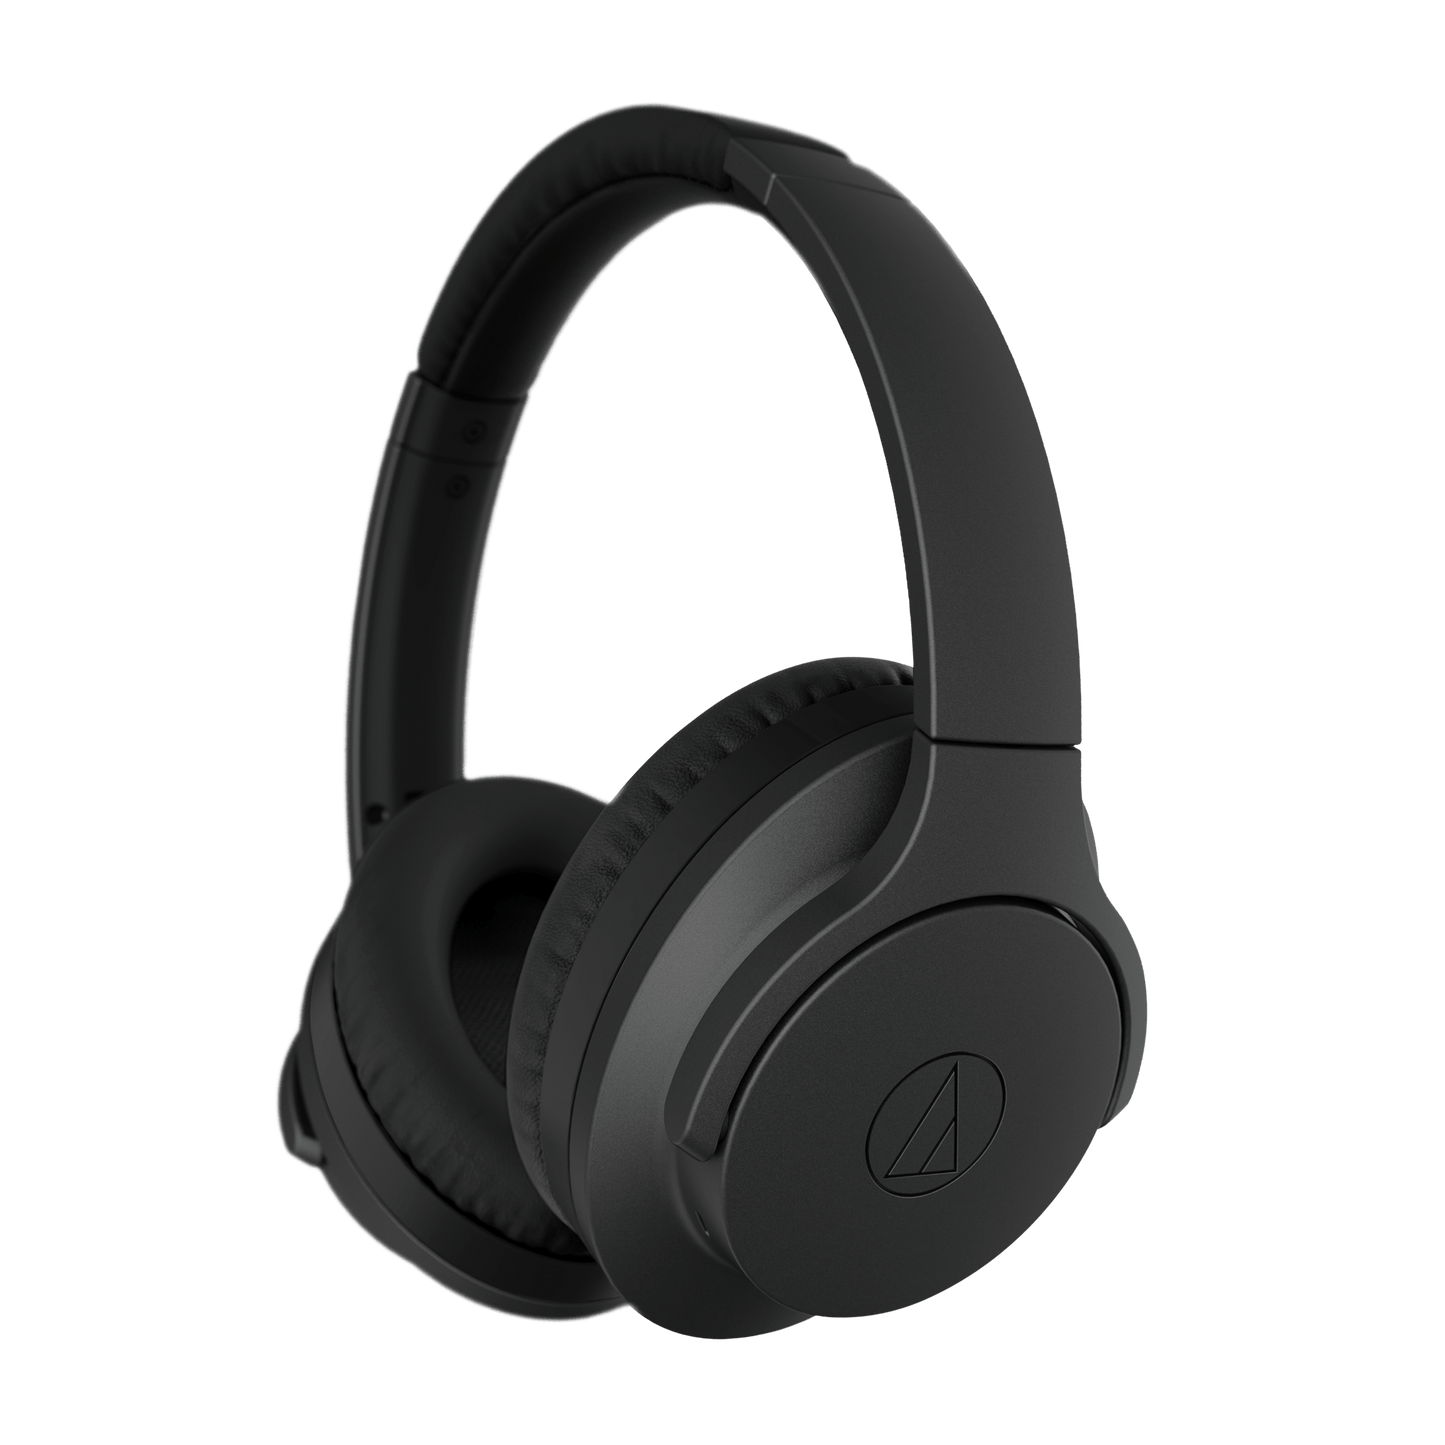 Audio-Technica ATH-ANC700BT Over-Ear Headphones